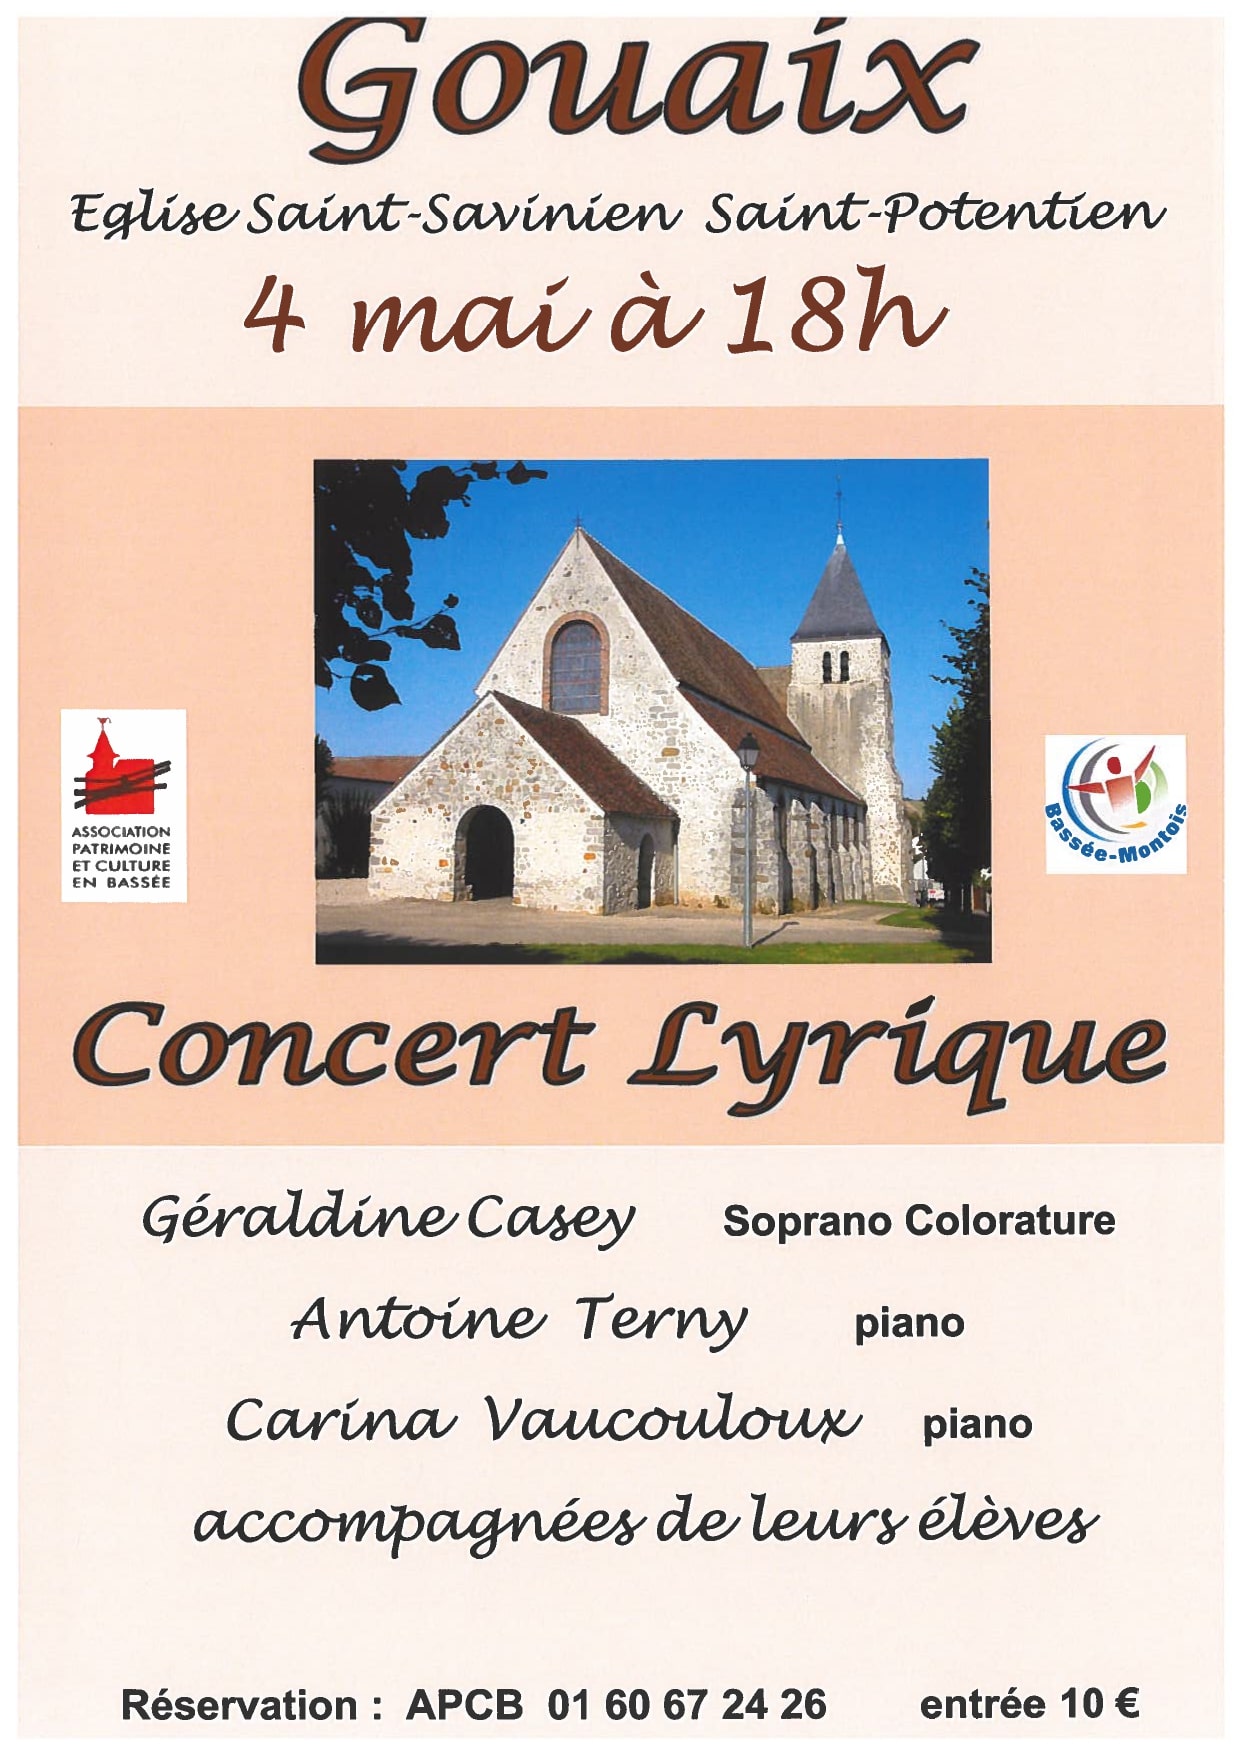 Concert Lyrique - Église de gouaix